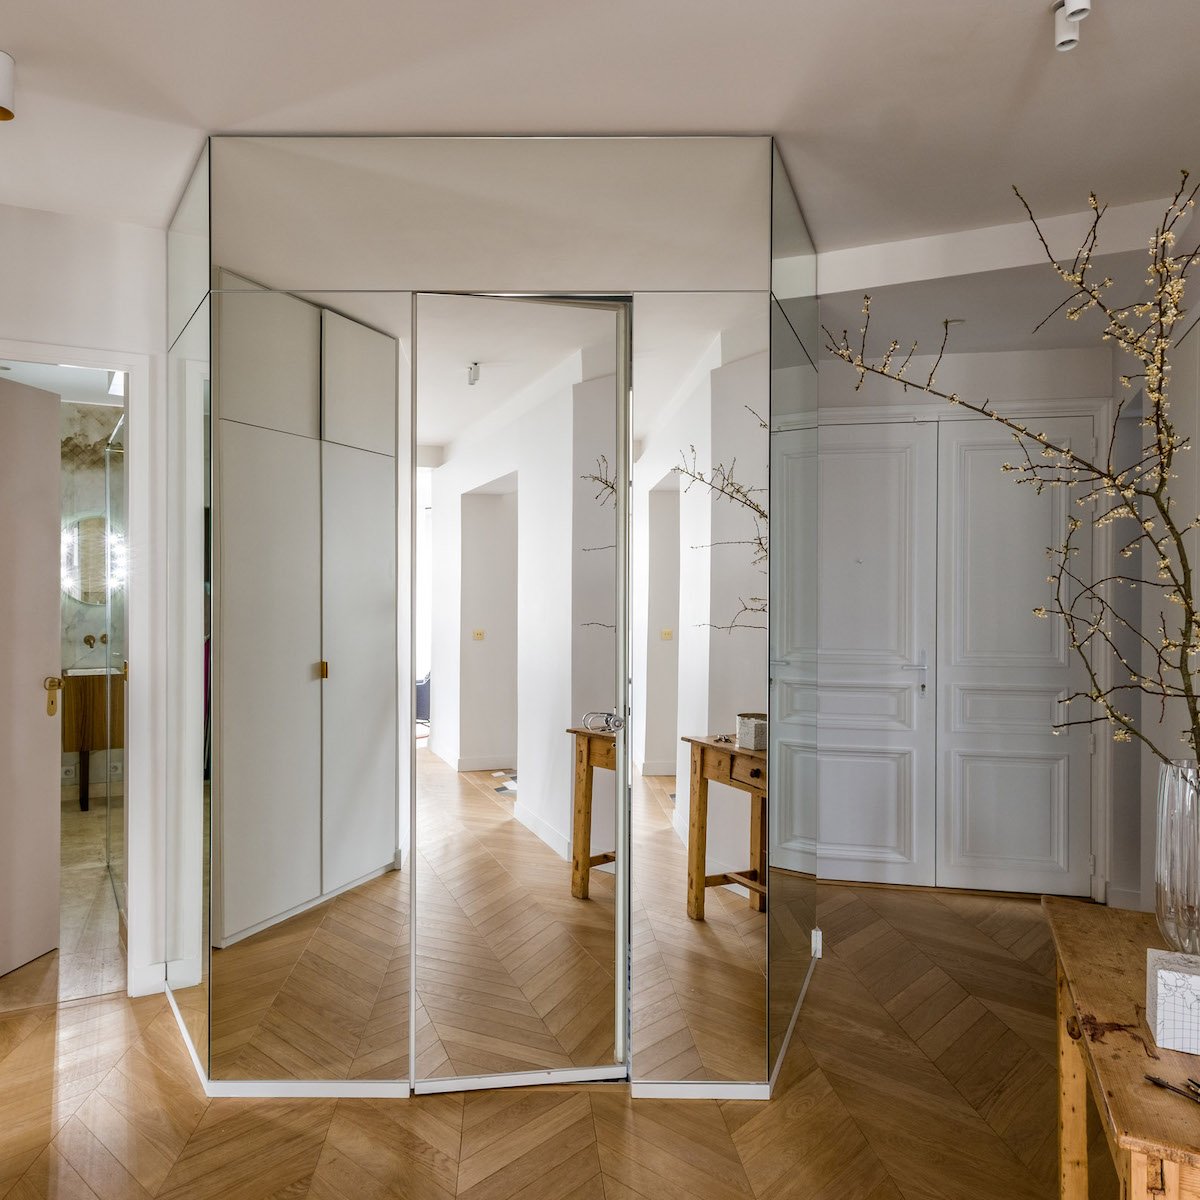 décoration bohème chic hall maison mur blanc miroir table bois rustique - blog déco - clem around the corner